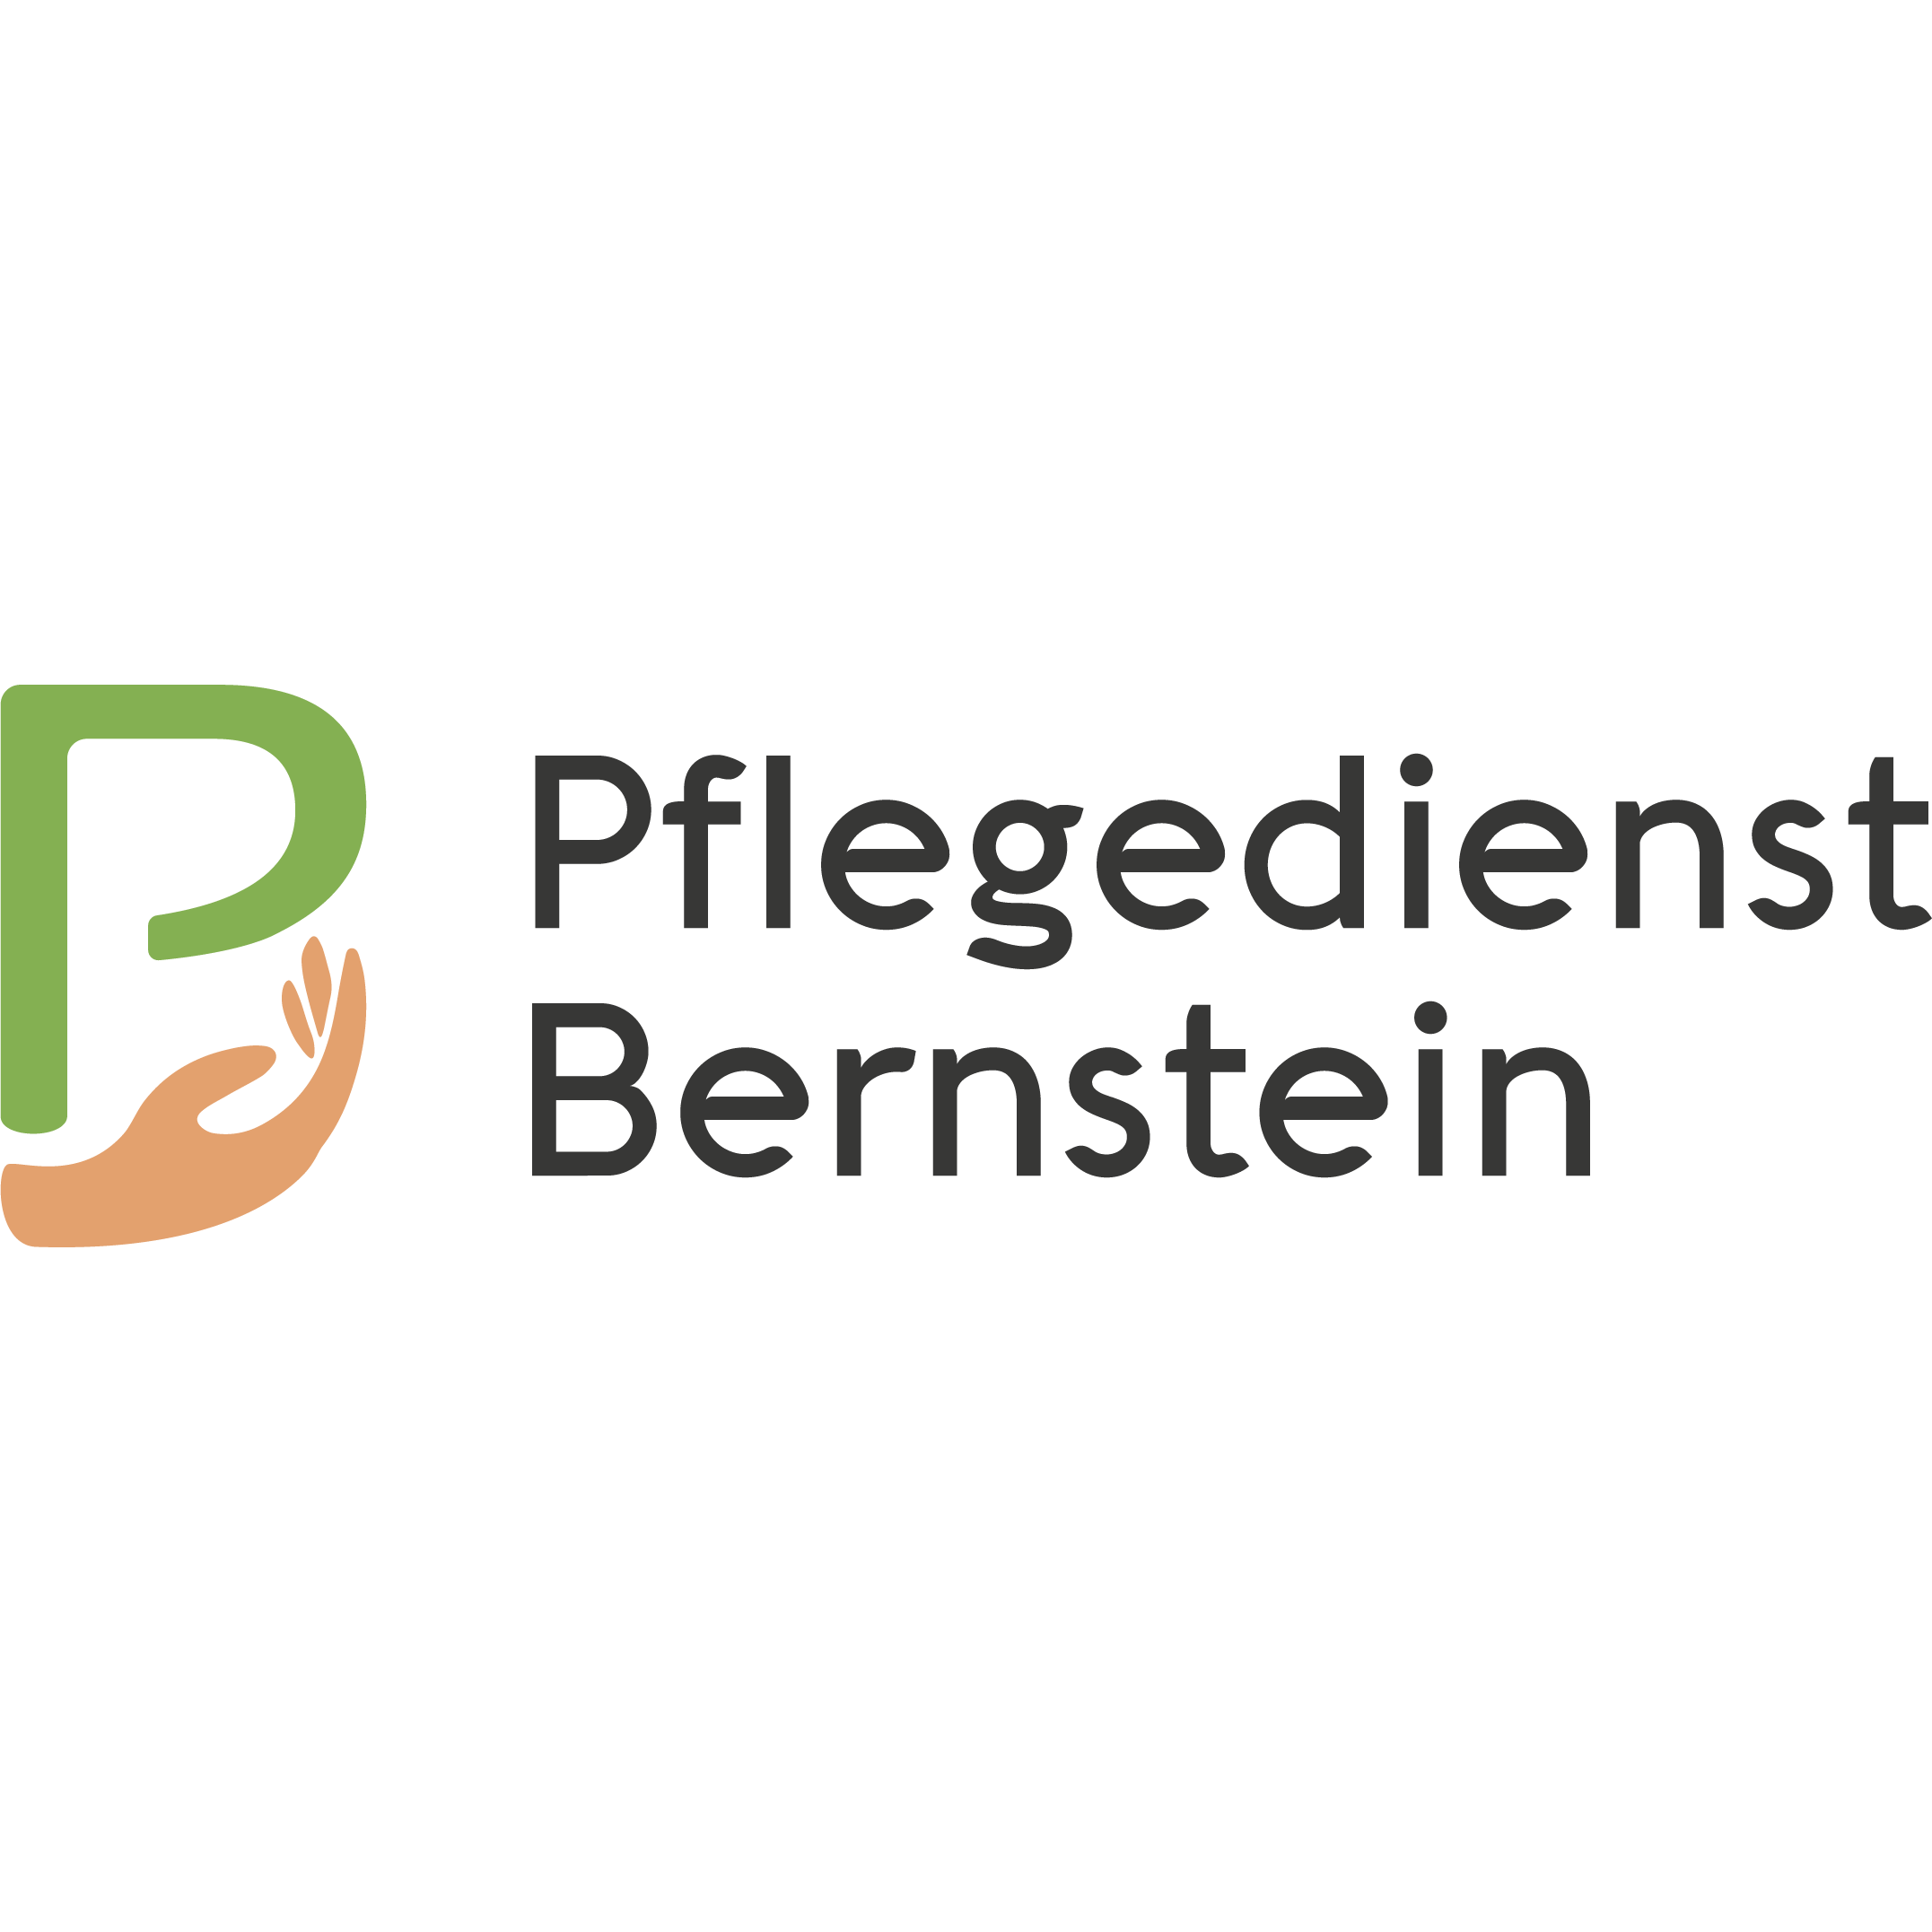 Pflegedienst Bernstein GmbH Logo